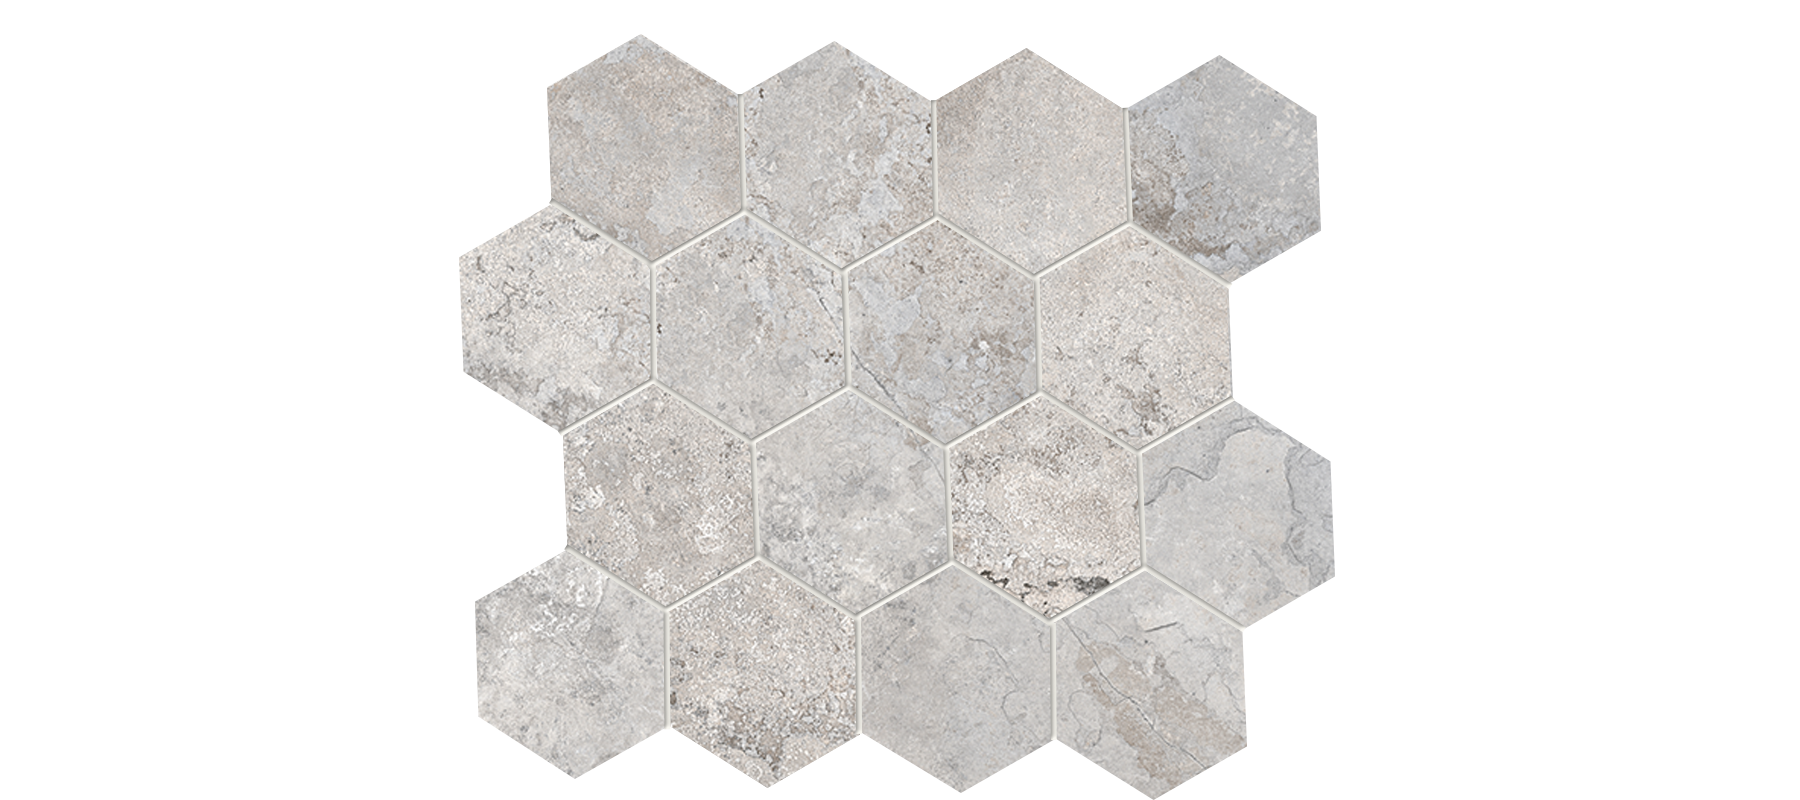 Hekla 3x3 Hexagonal Mosaic on 10.25x11.75 Sheet Glazed Porcelain-Thunder